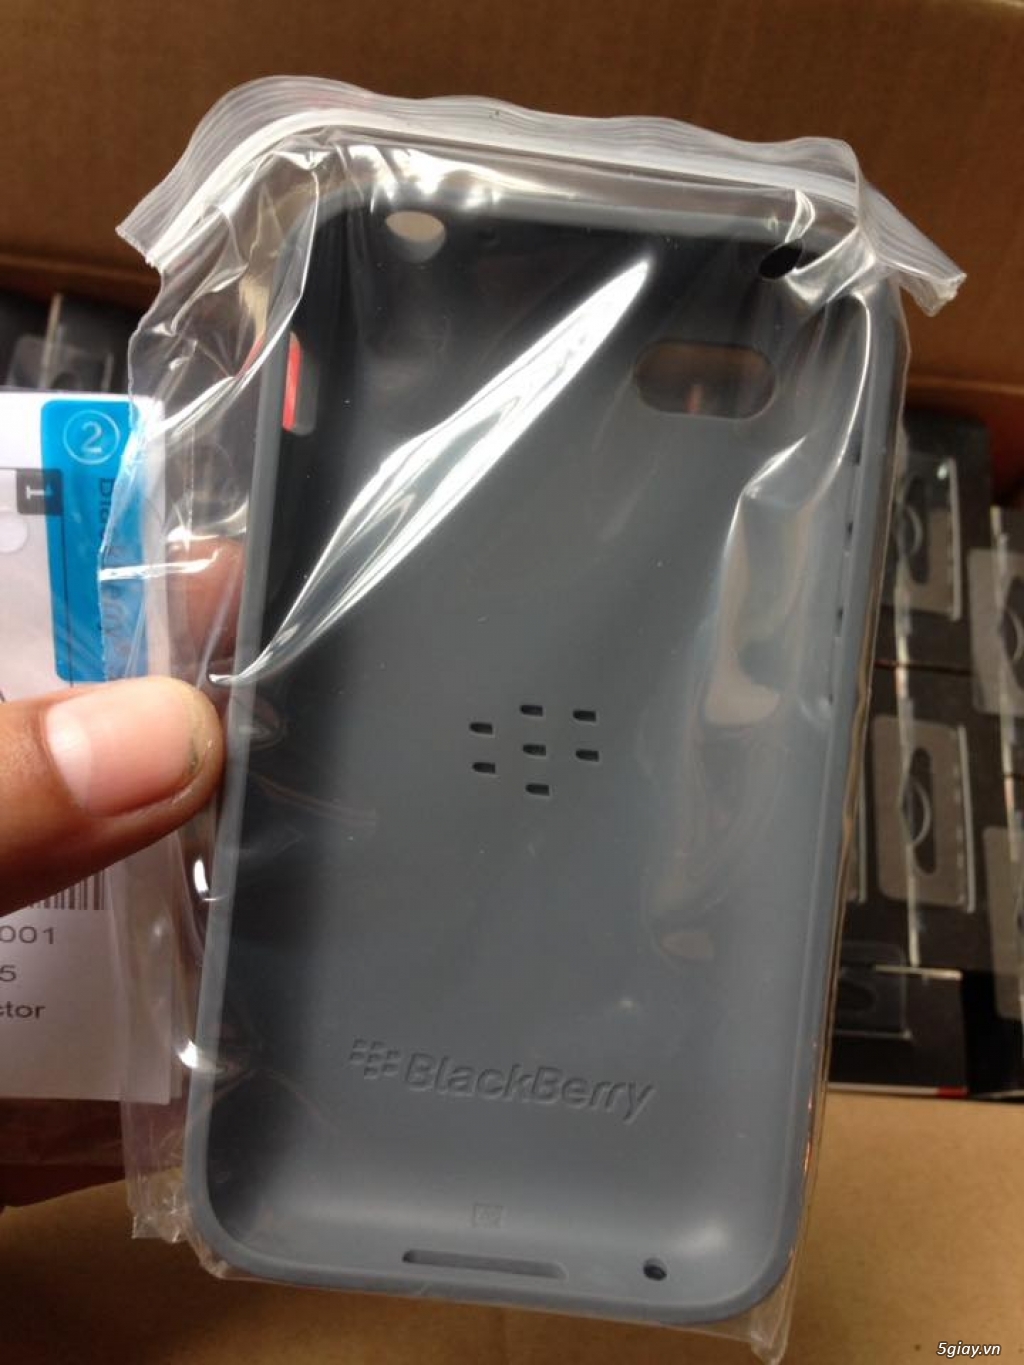 Premium Shell Blackberry Q5 new 100% nguyên hộp nhập khẩu thanh lý